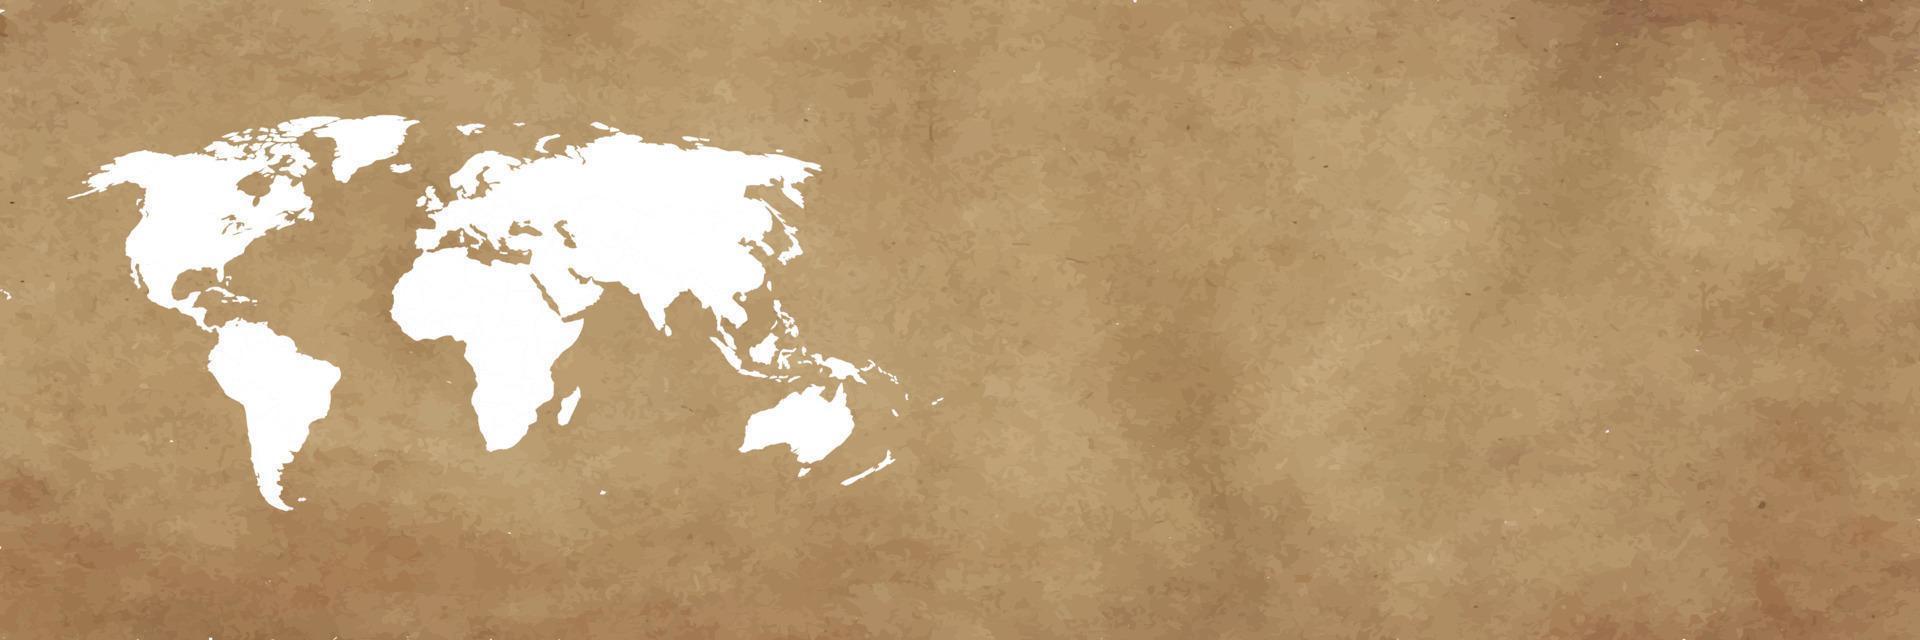 wereldkaart op bruine achtergrondbanner vector